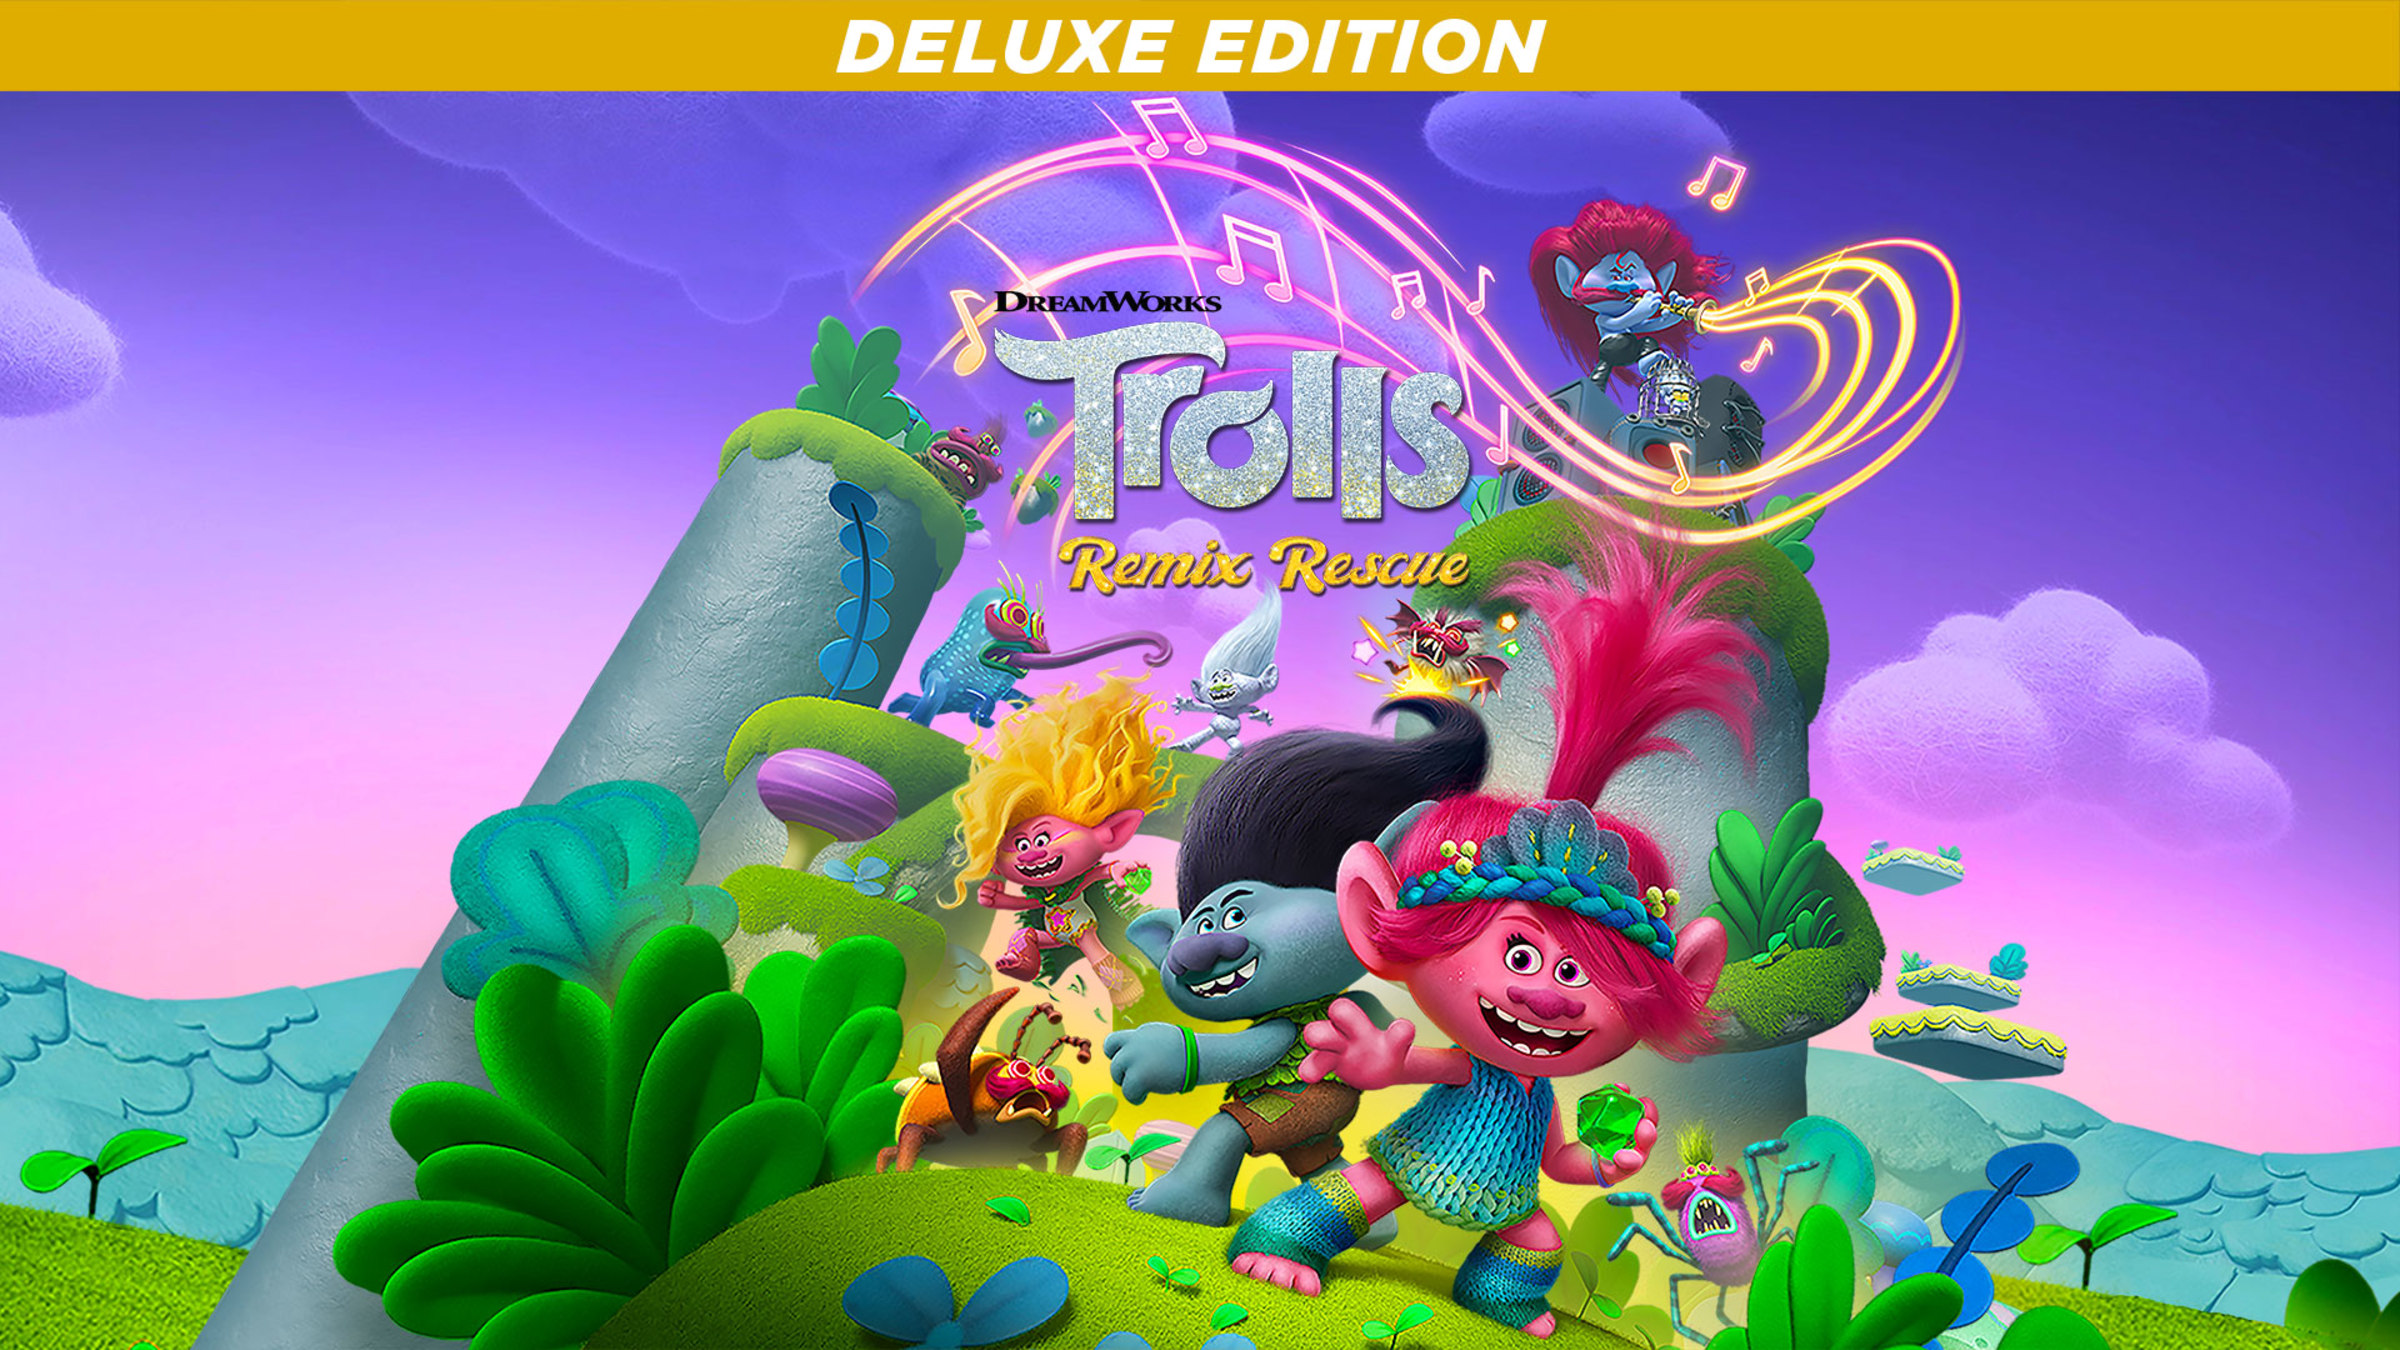 Trolls é o novo desenho da DreamWorks - Diário do Vale